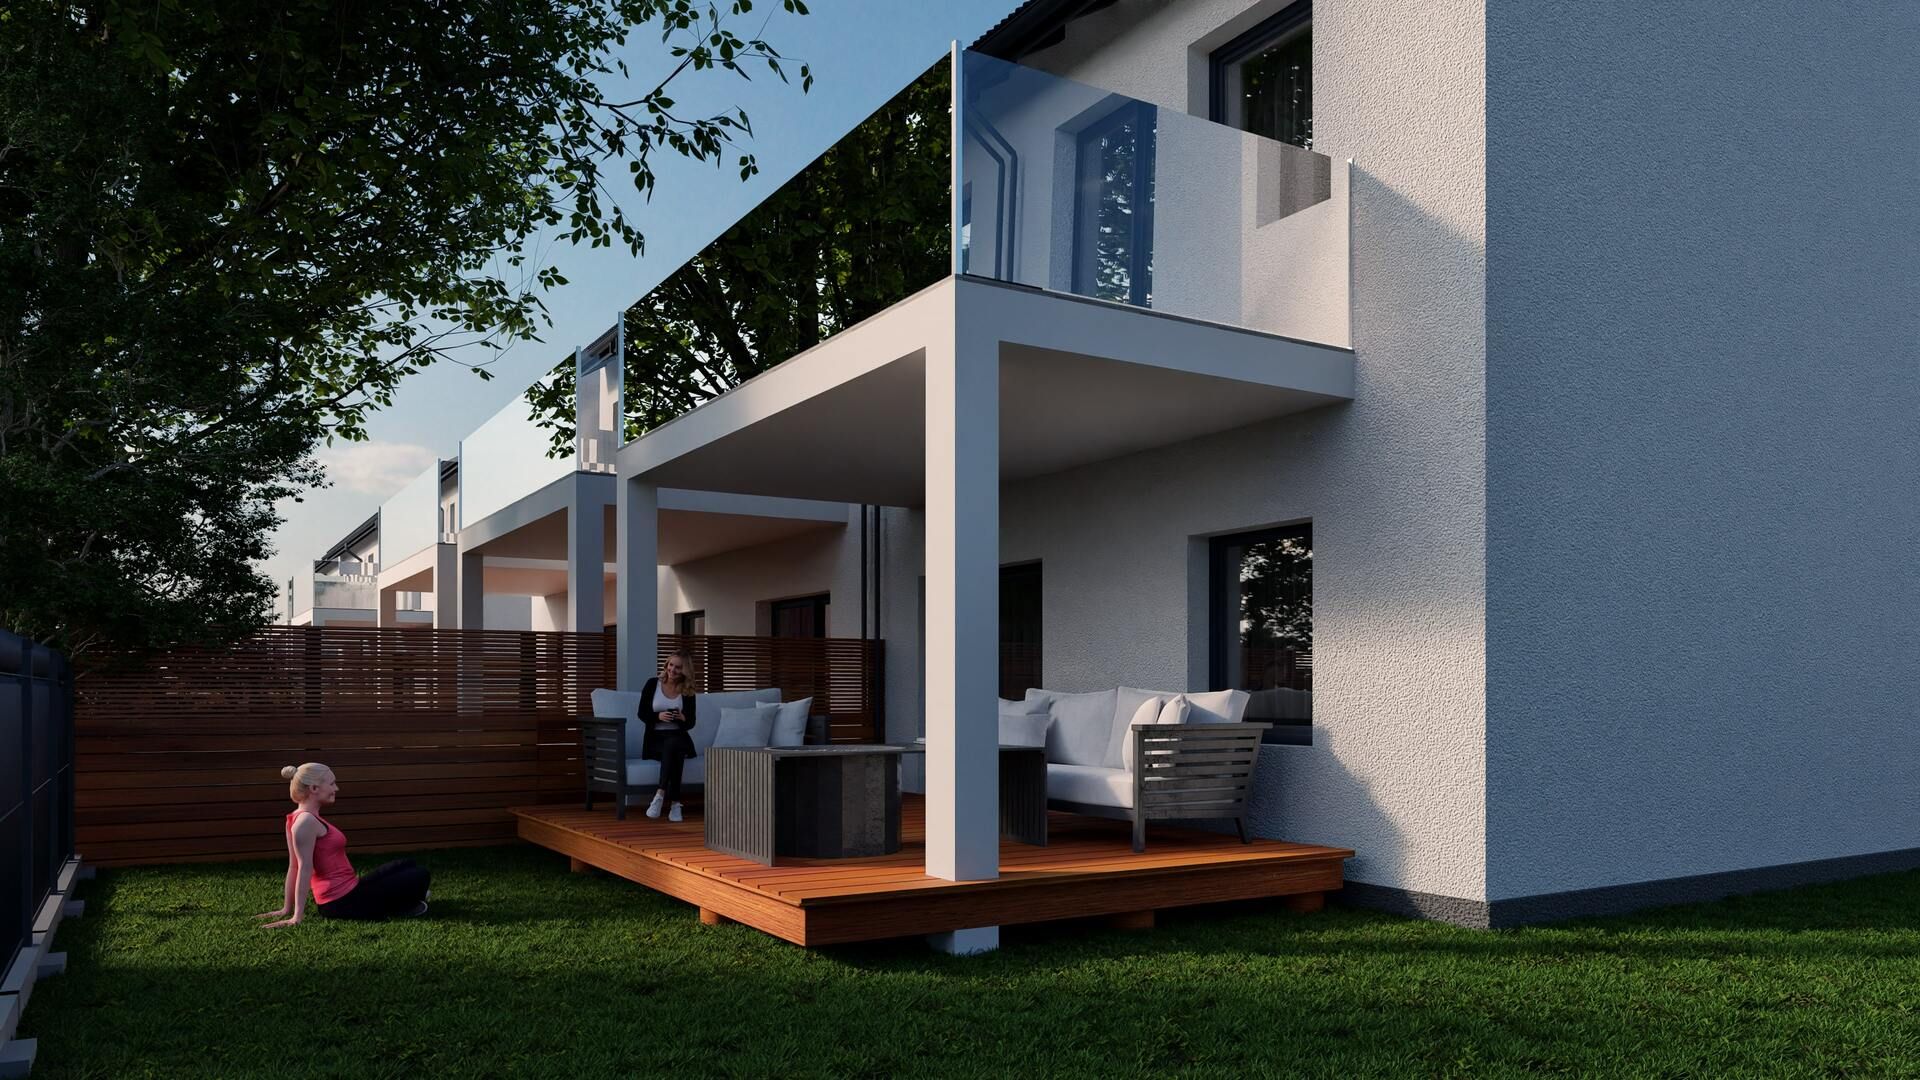 3D Animation of a Housing Estate for a Developer - 5 Advantages